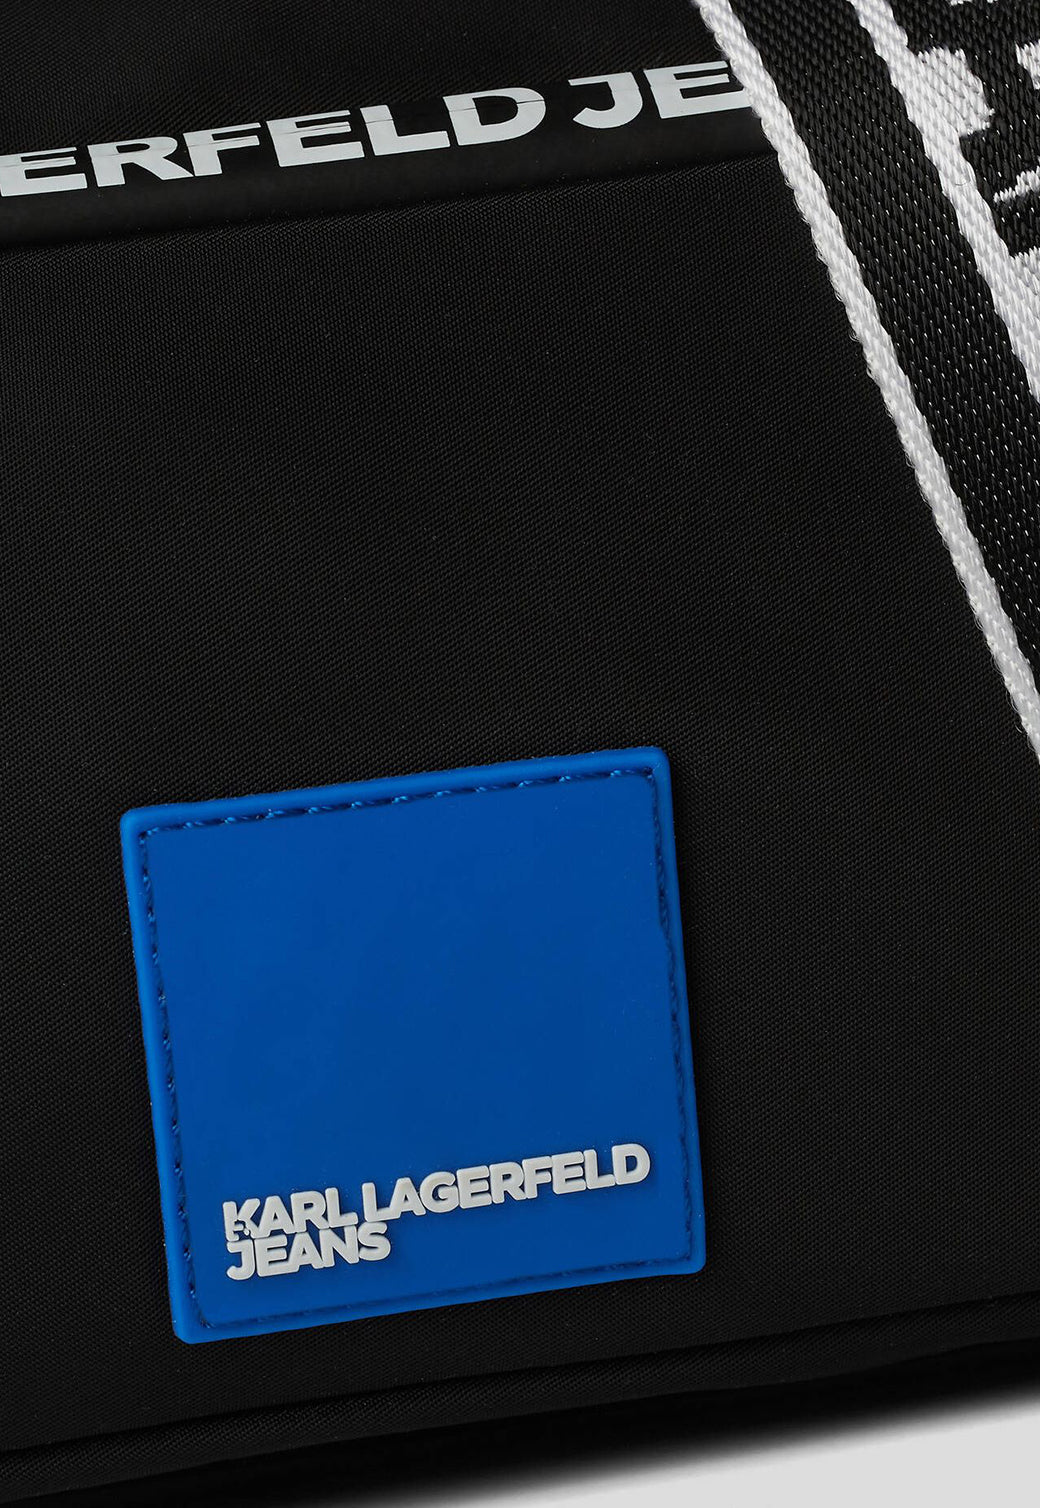 תיק קרוסבודי Nylon LG גברים - Karl Lagerfeld